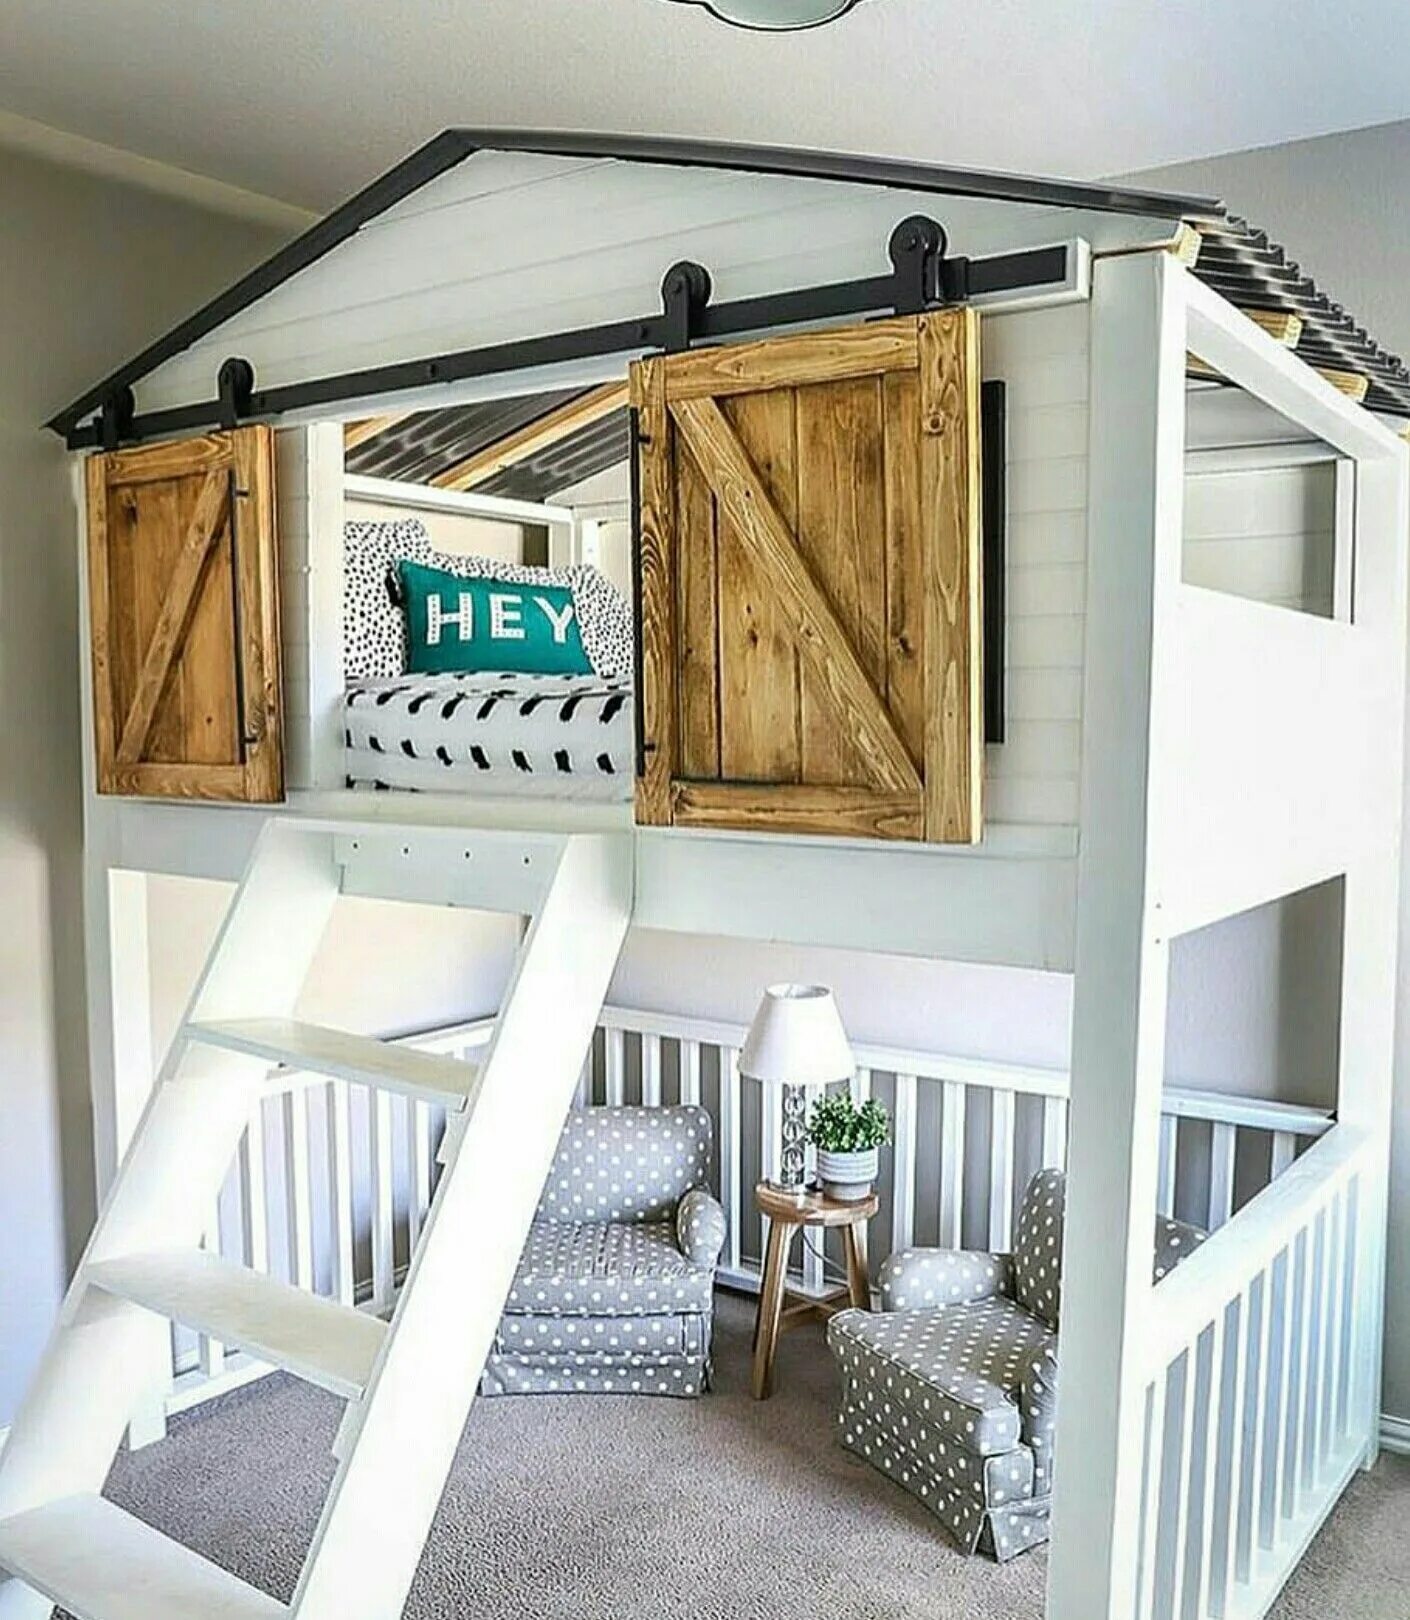 Кровать дом взрослая. Кровать-домик Nest Loft. Кровать домик для детей. Кровать с домиком наверху. Двухъярусная кровать домик для детей.